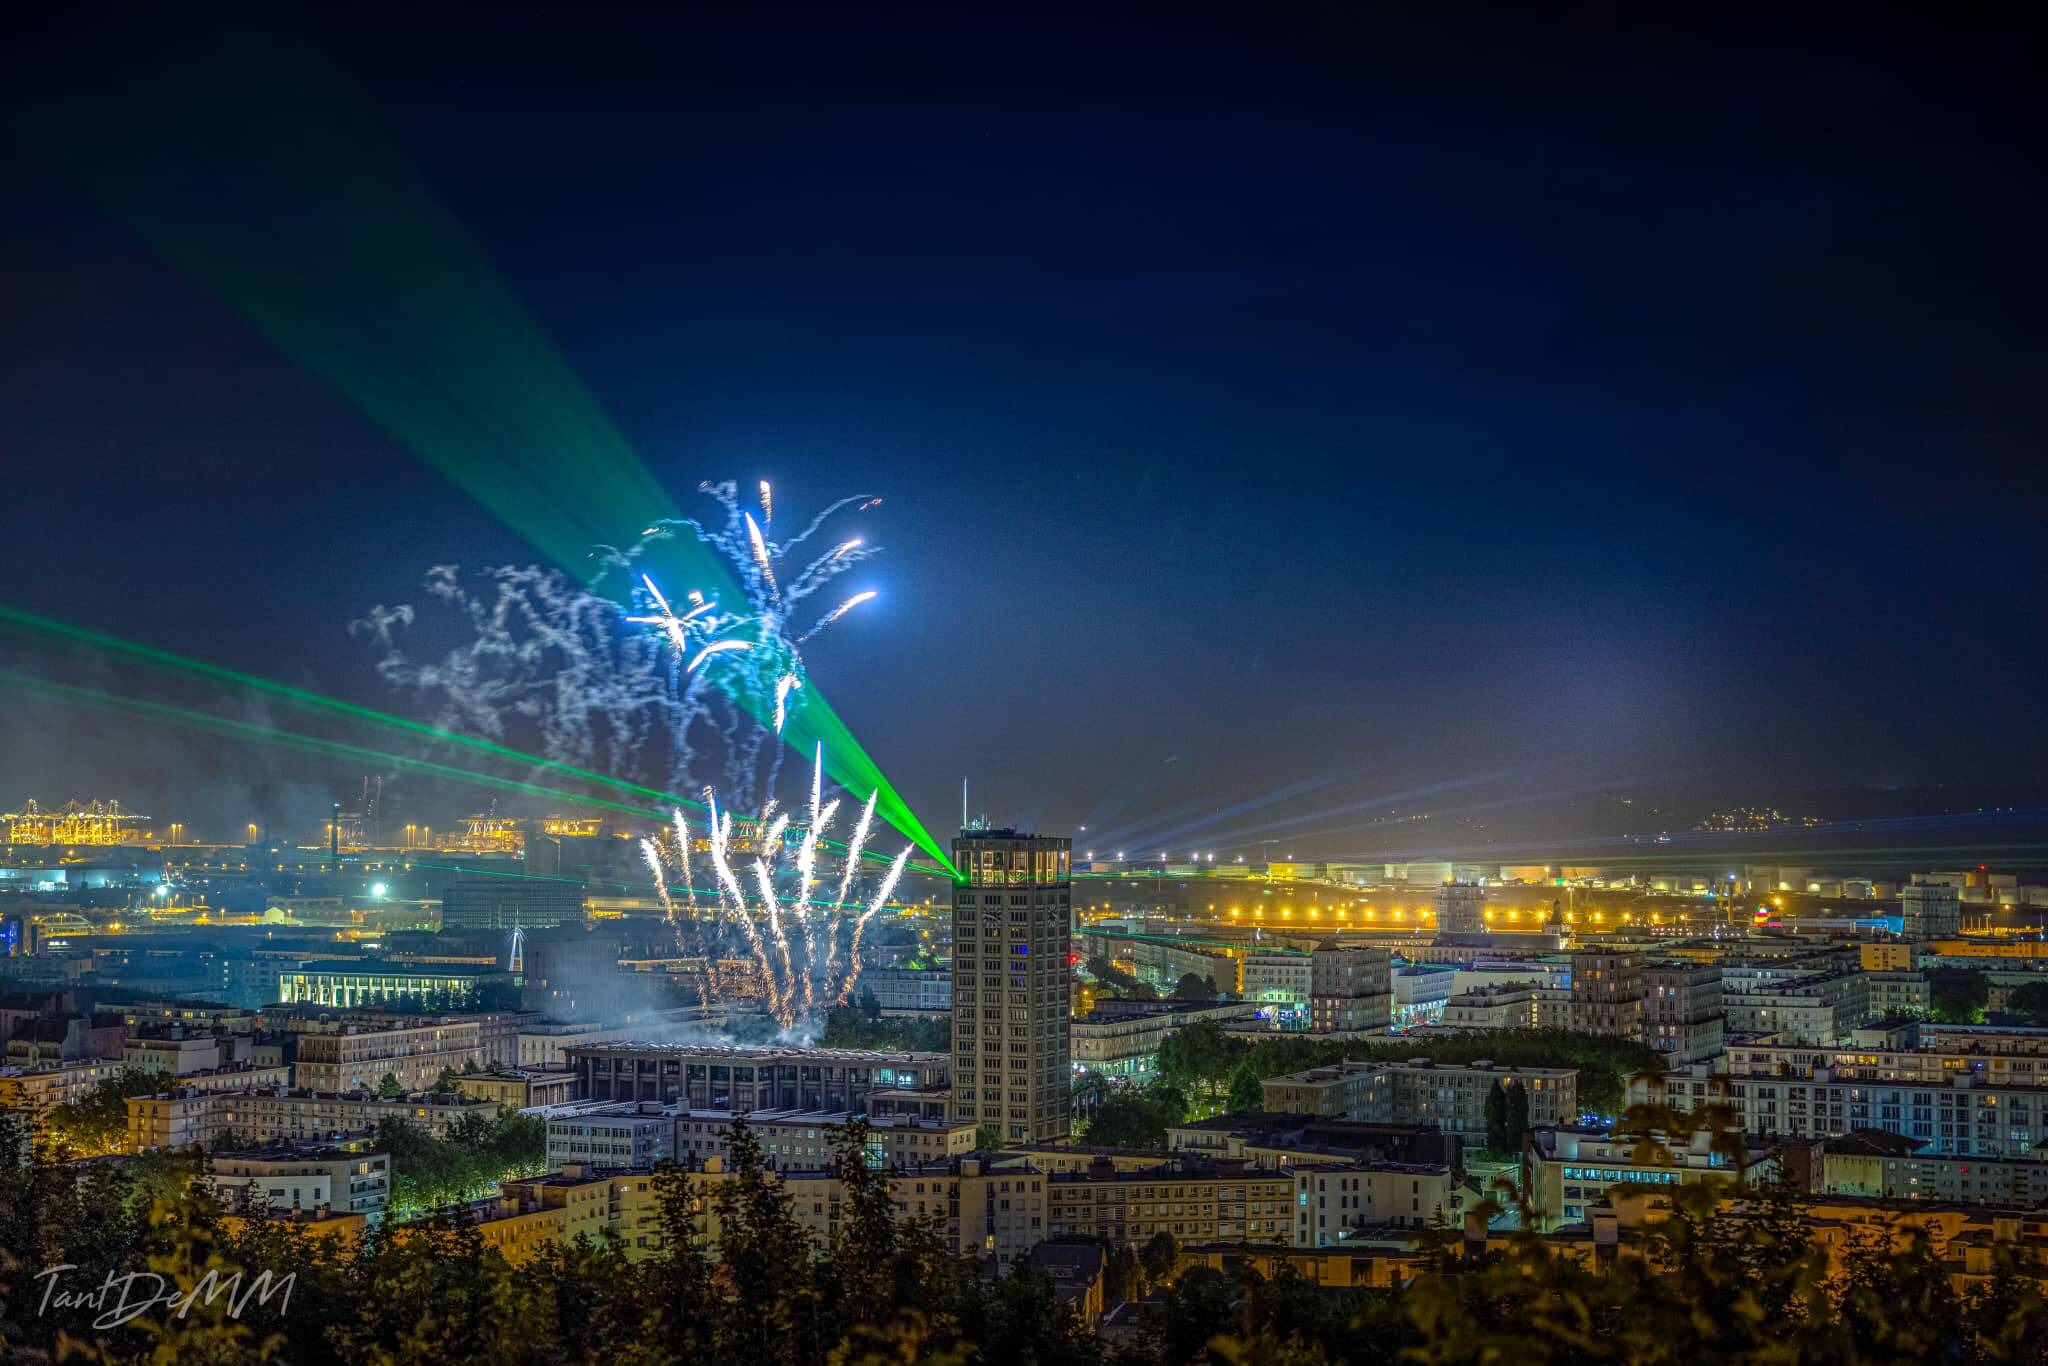 Europe Évènement - Spectacle laser au dessus de la ville accompagné d'un feu d'artifice